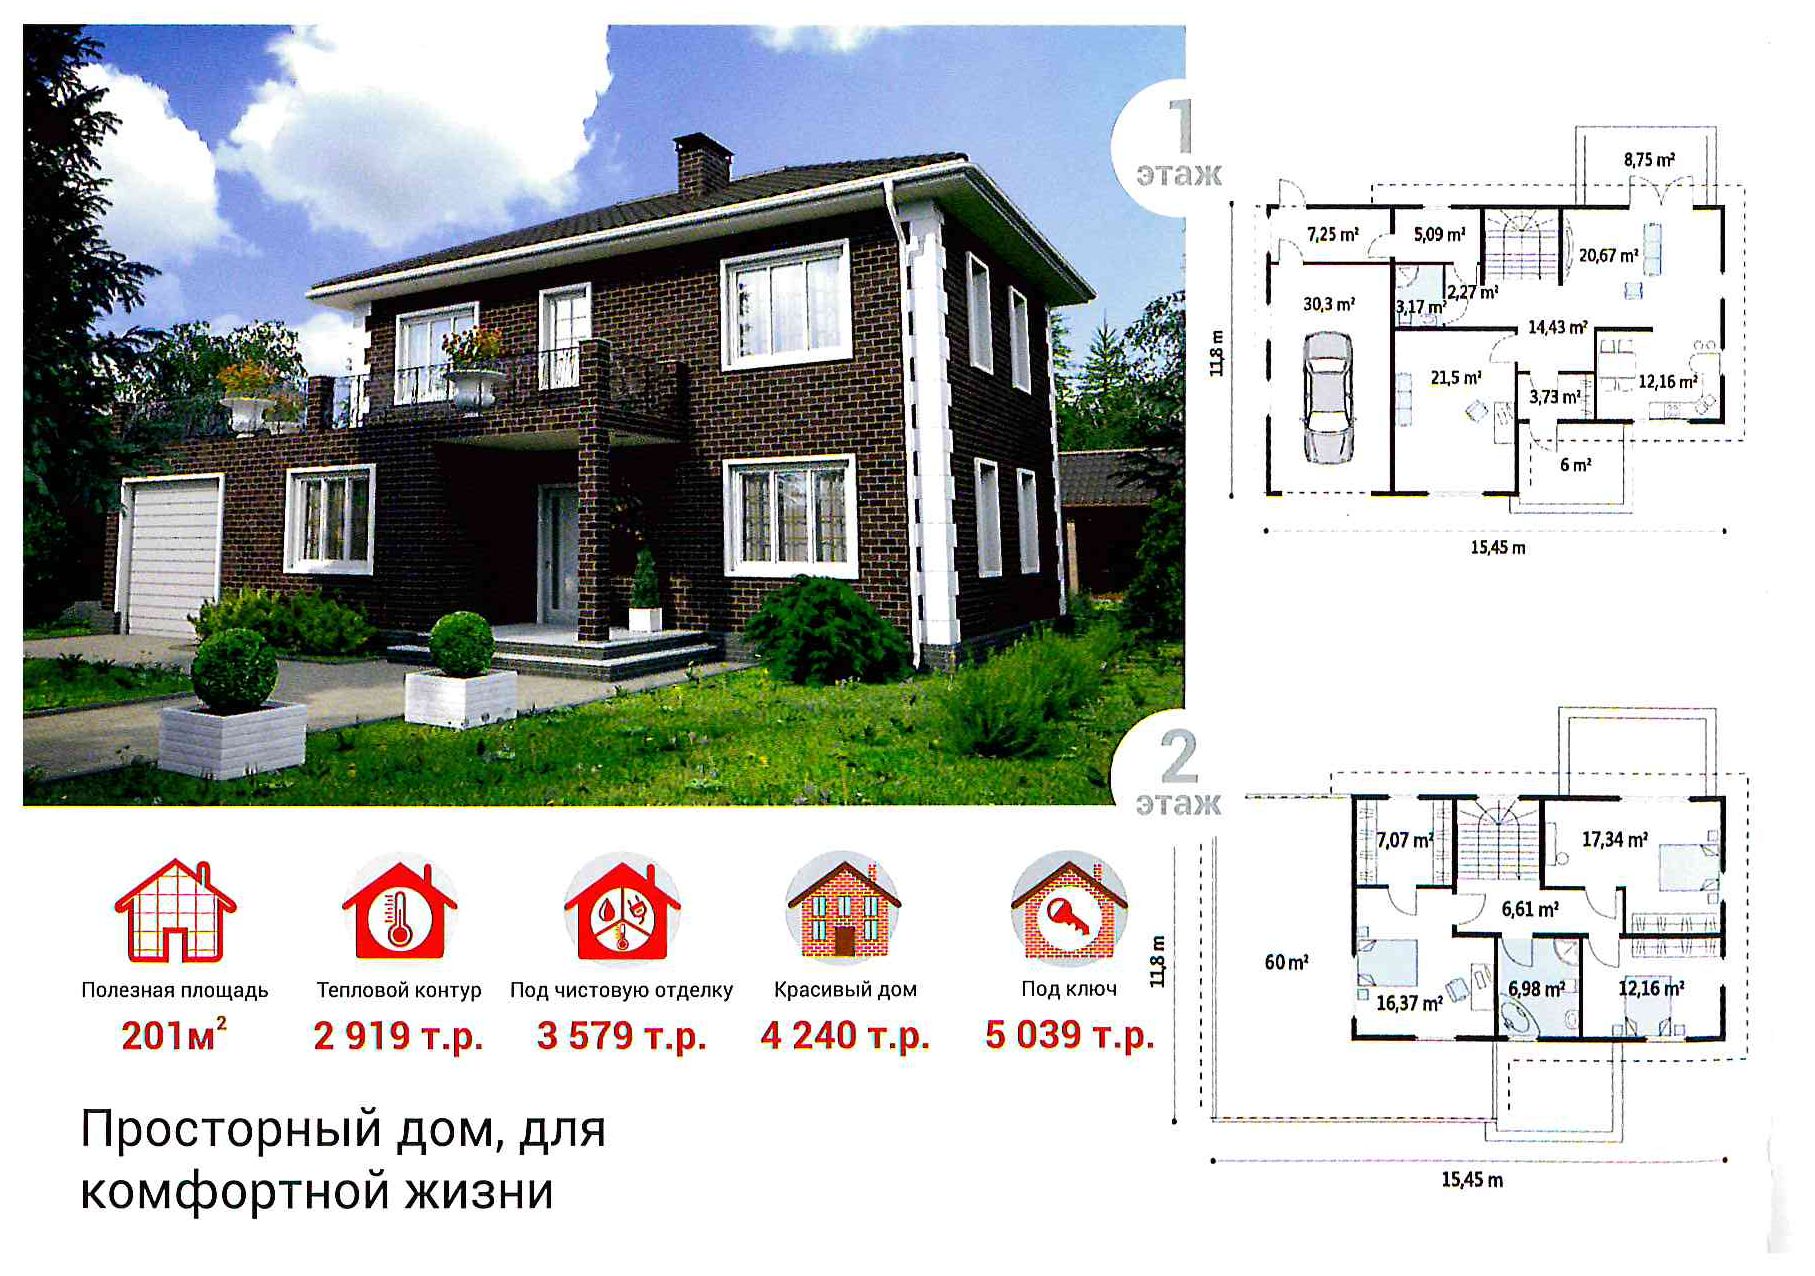 Как построить дом в Новосибирске - бесплатная экскурсия